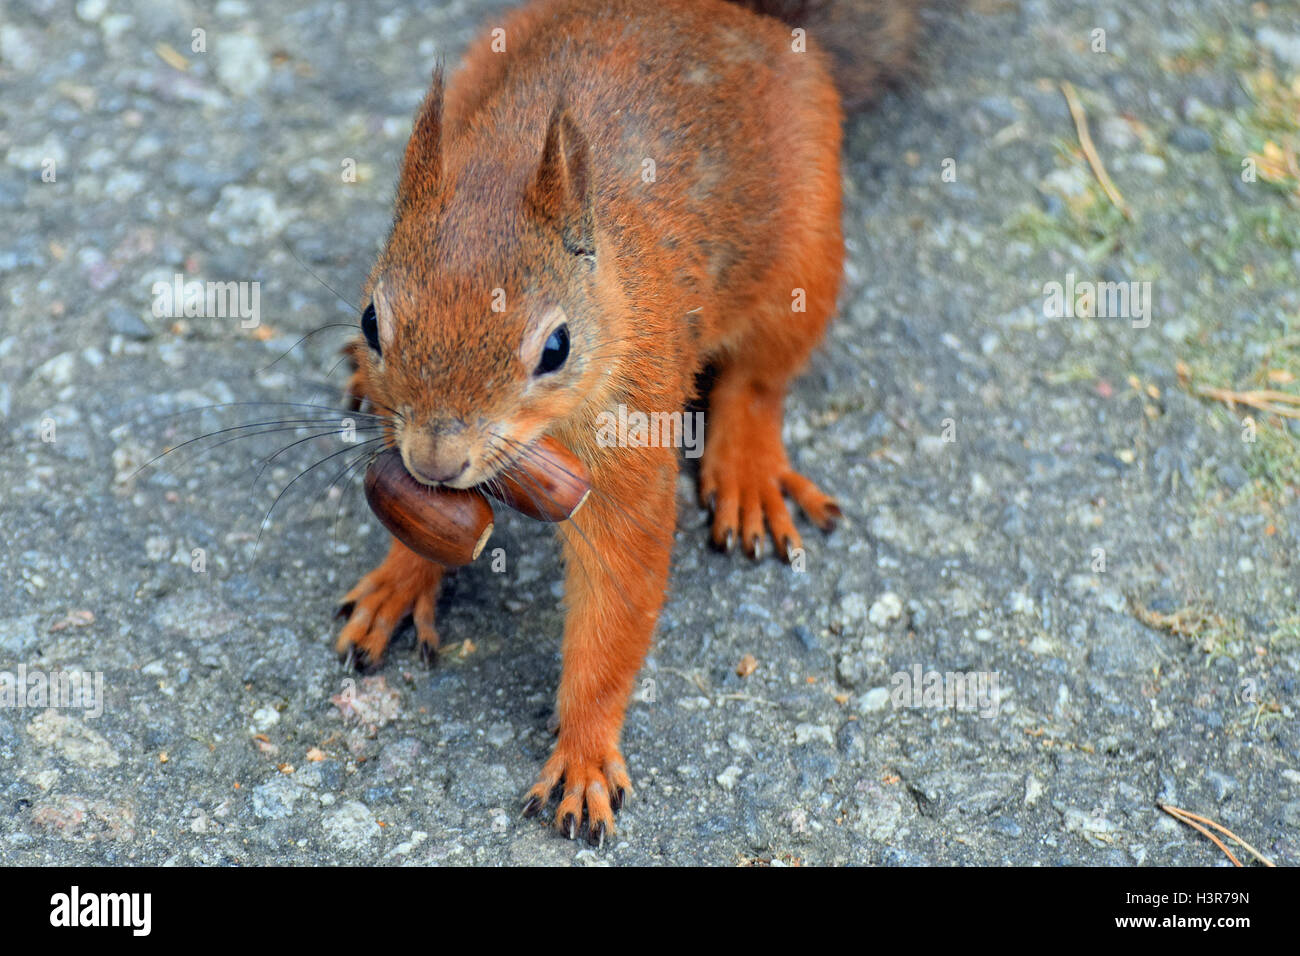 Avidi di scoiattolo con due ghiande nella sua bocca. Foto Stock